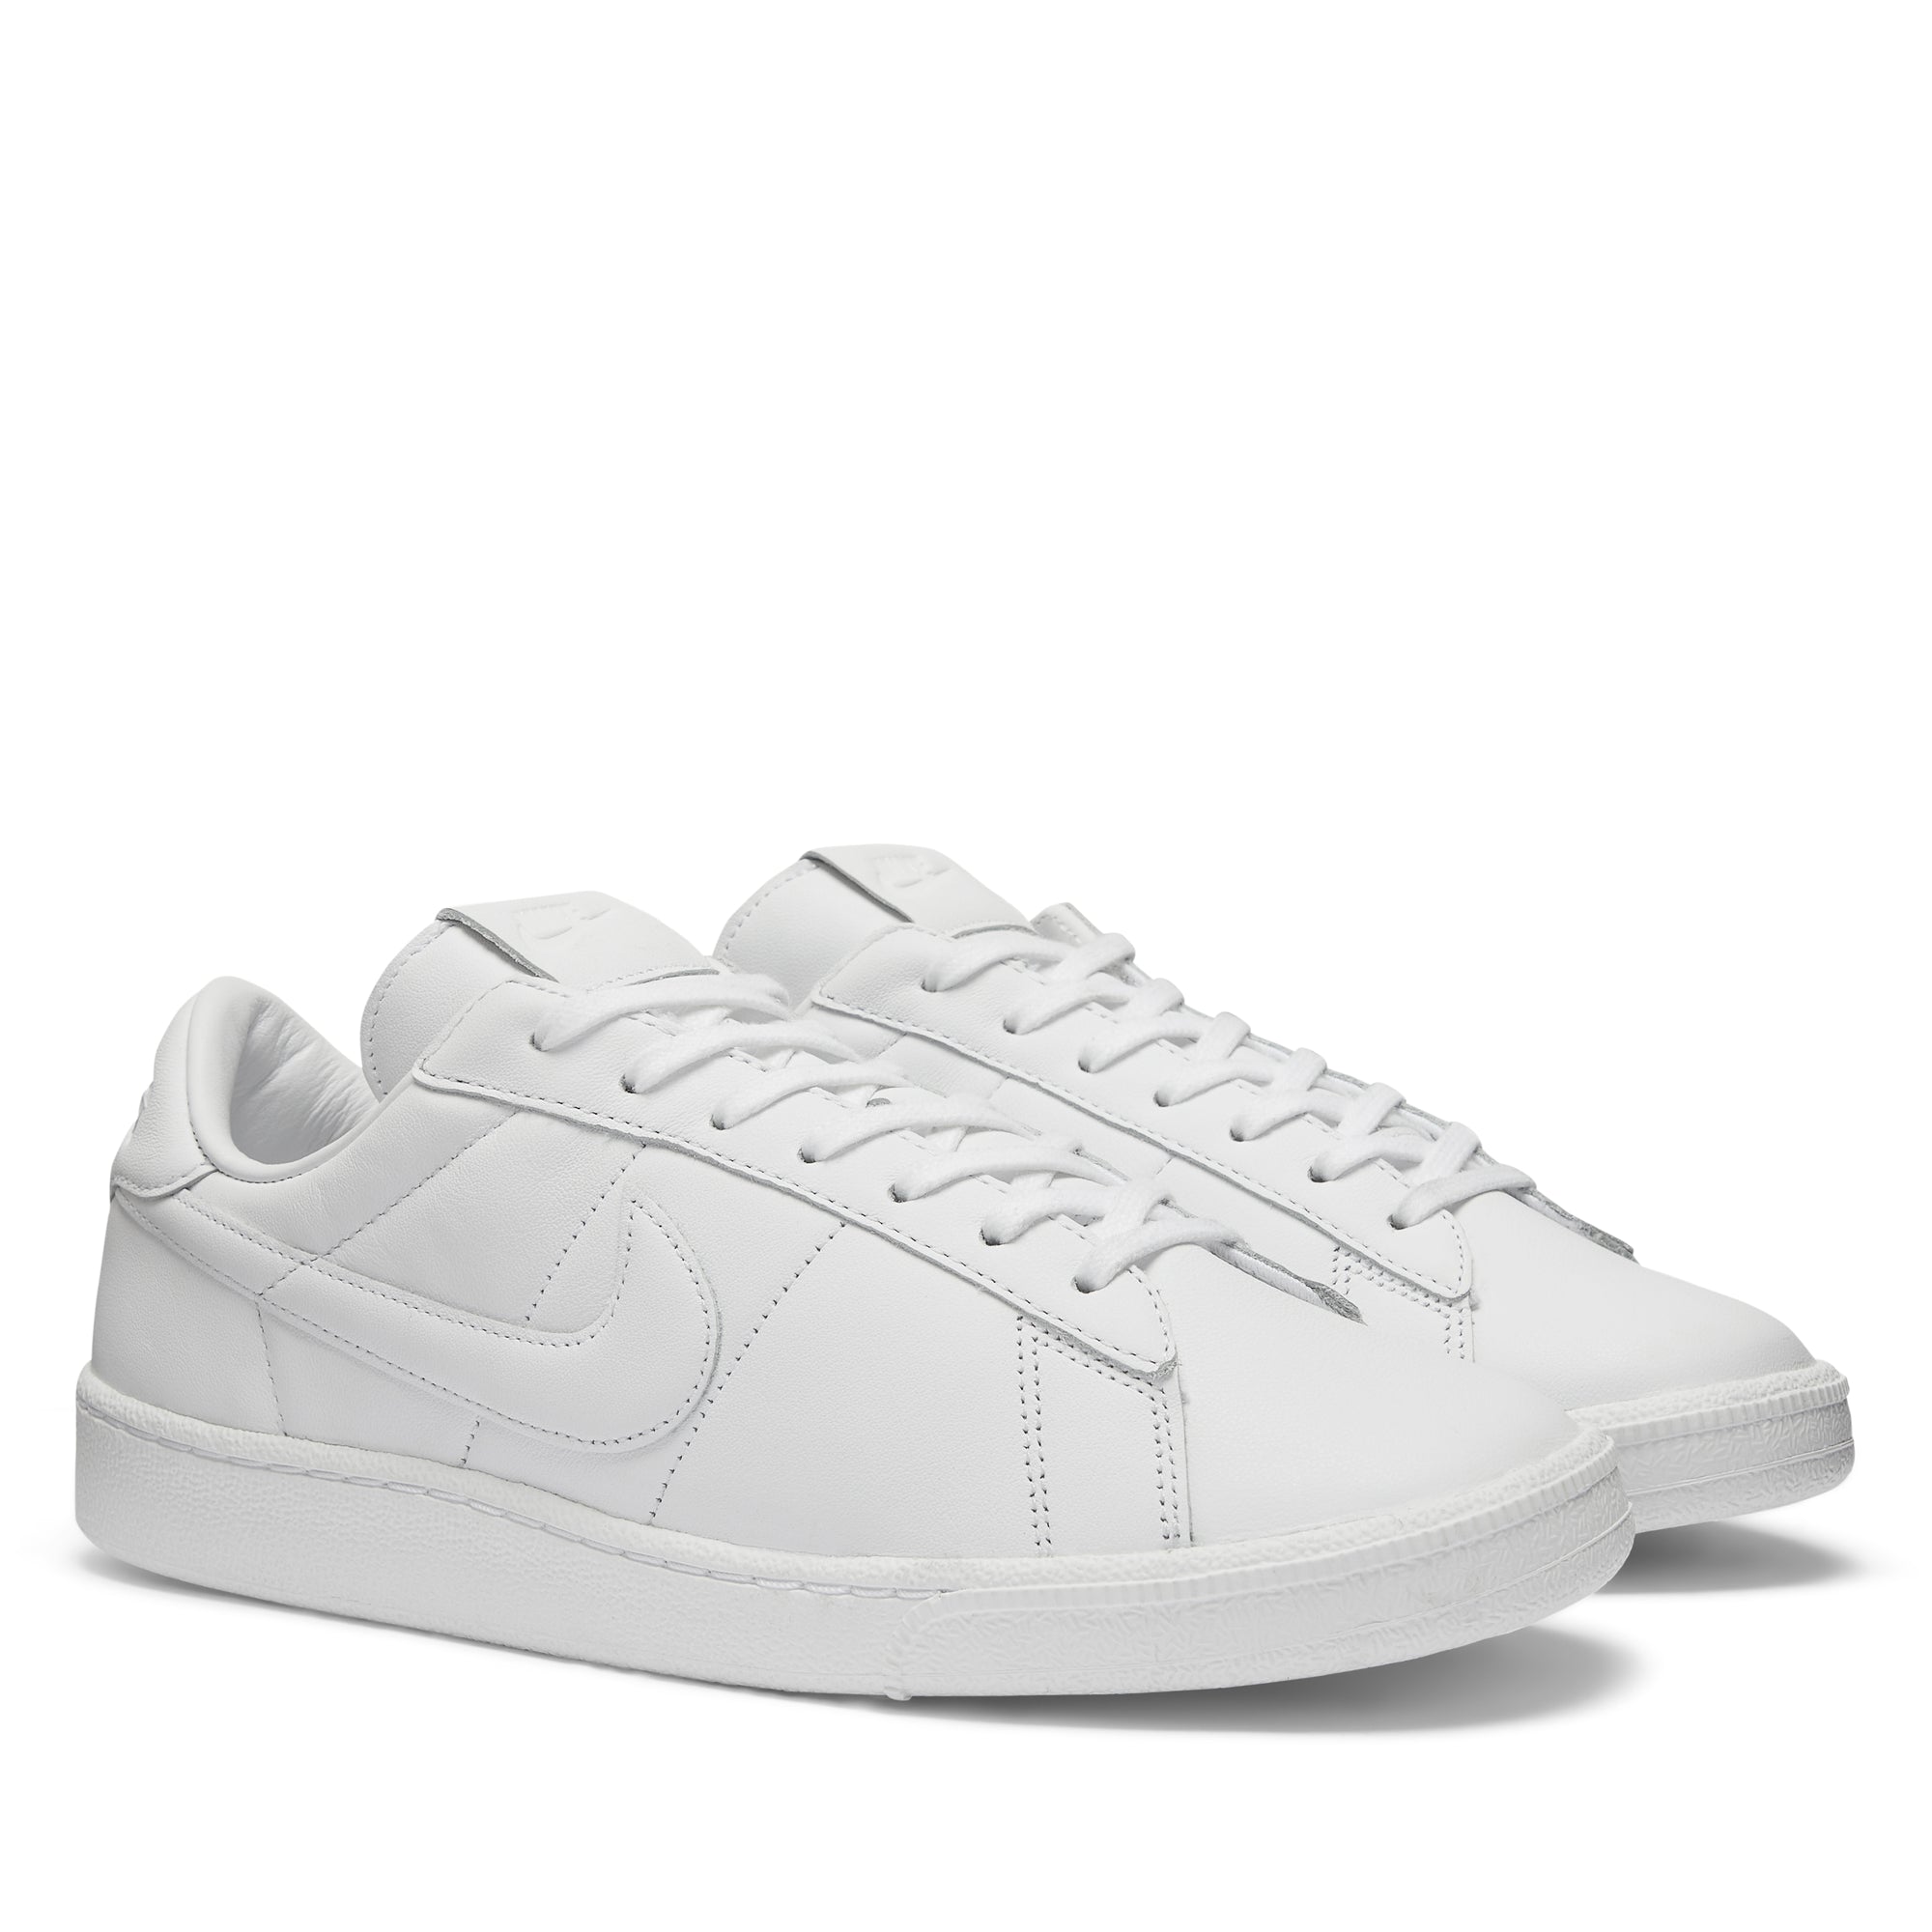 COMME des GARÇONS' Nike Tennis Shoe Is Peak Simplicity